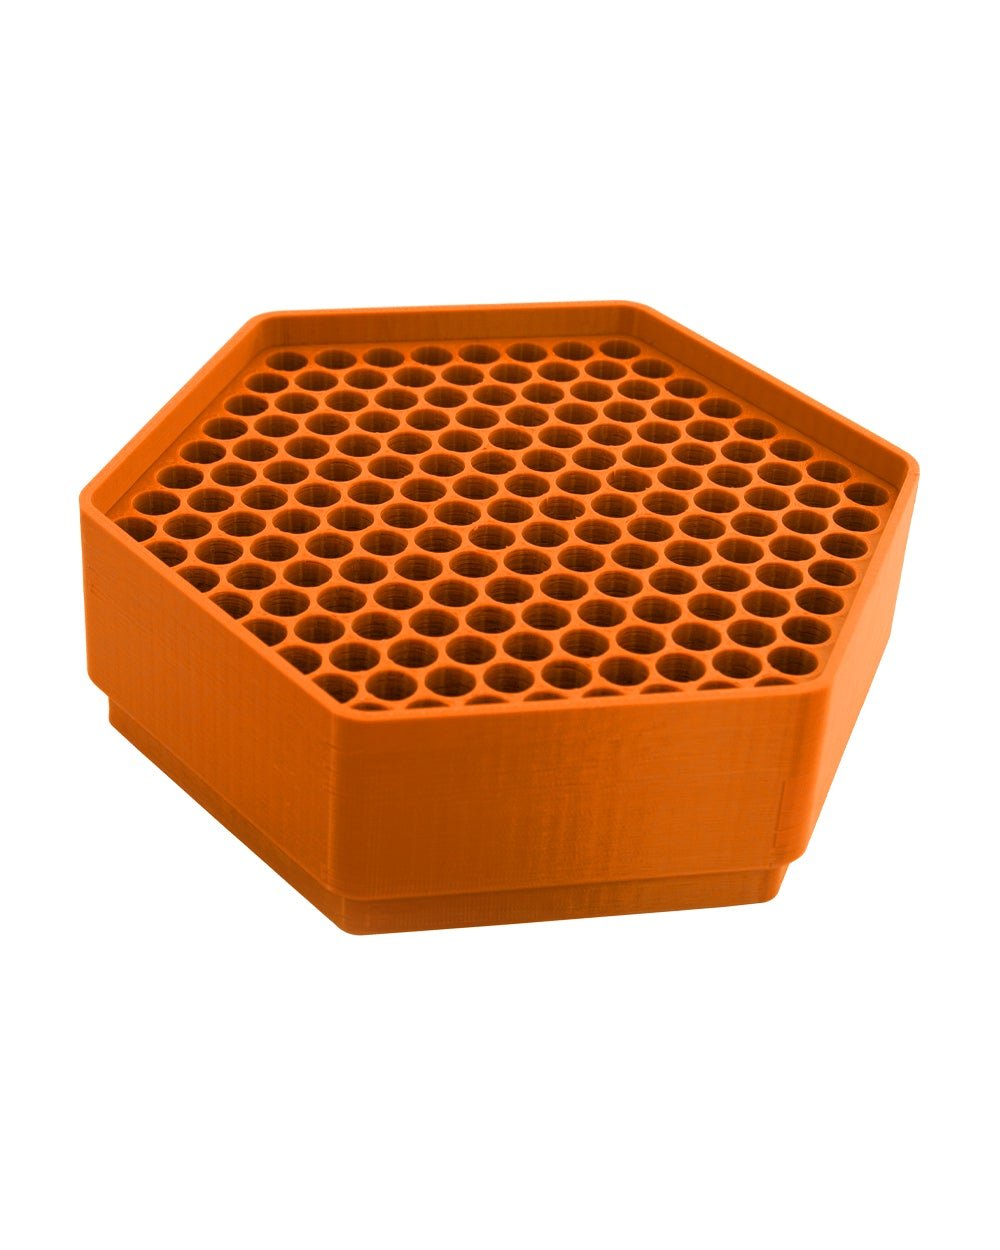 KING KONE | Orange Vibration Pre-Rolled Cones Filling Machine 84/98/109mm | Fill 169 Cones Per Run - 4